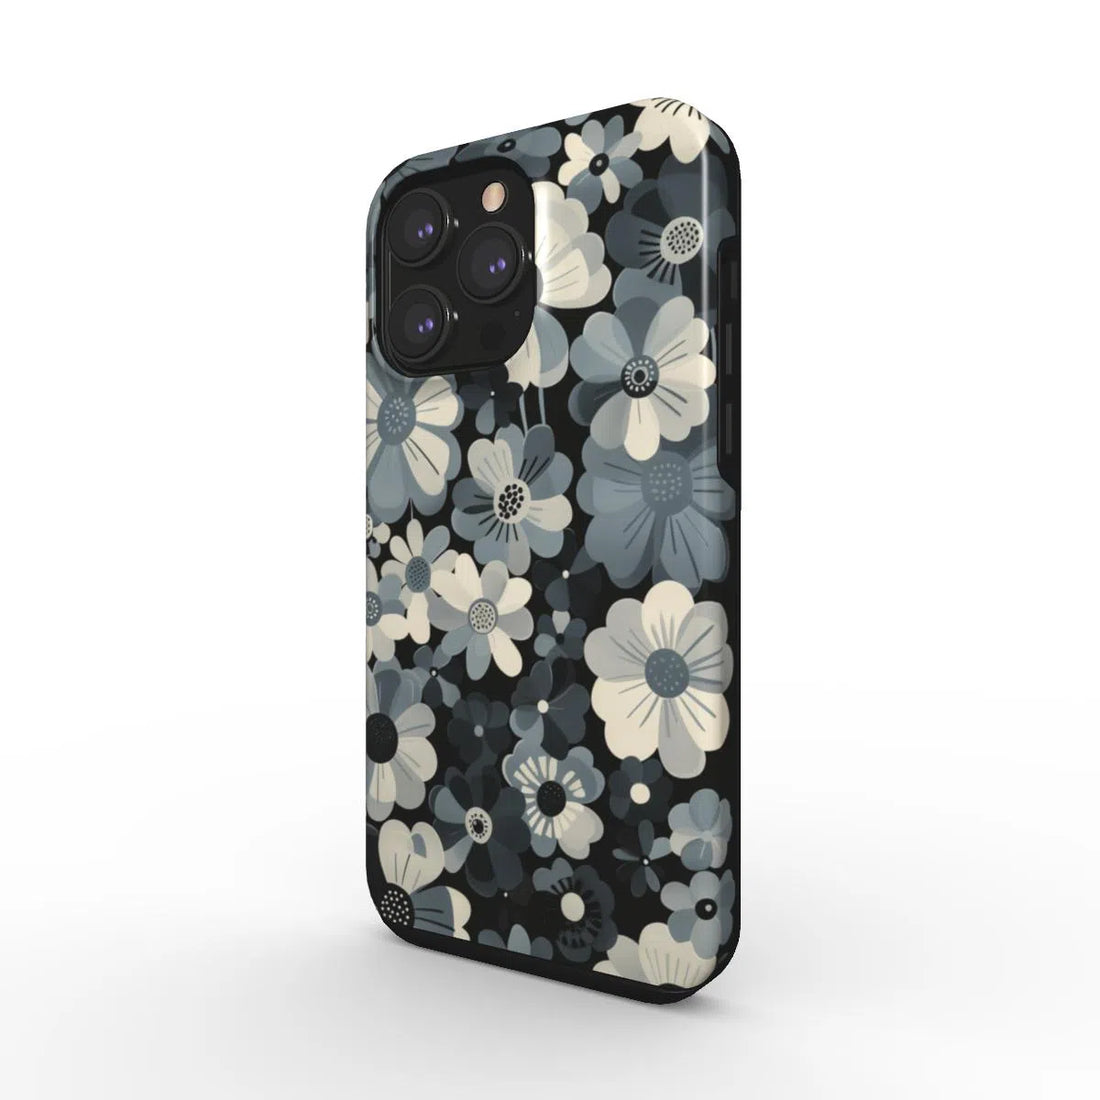 Monochrome Petals: The Chic Noir Floral | Tough Phone Case